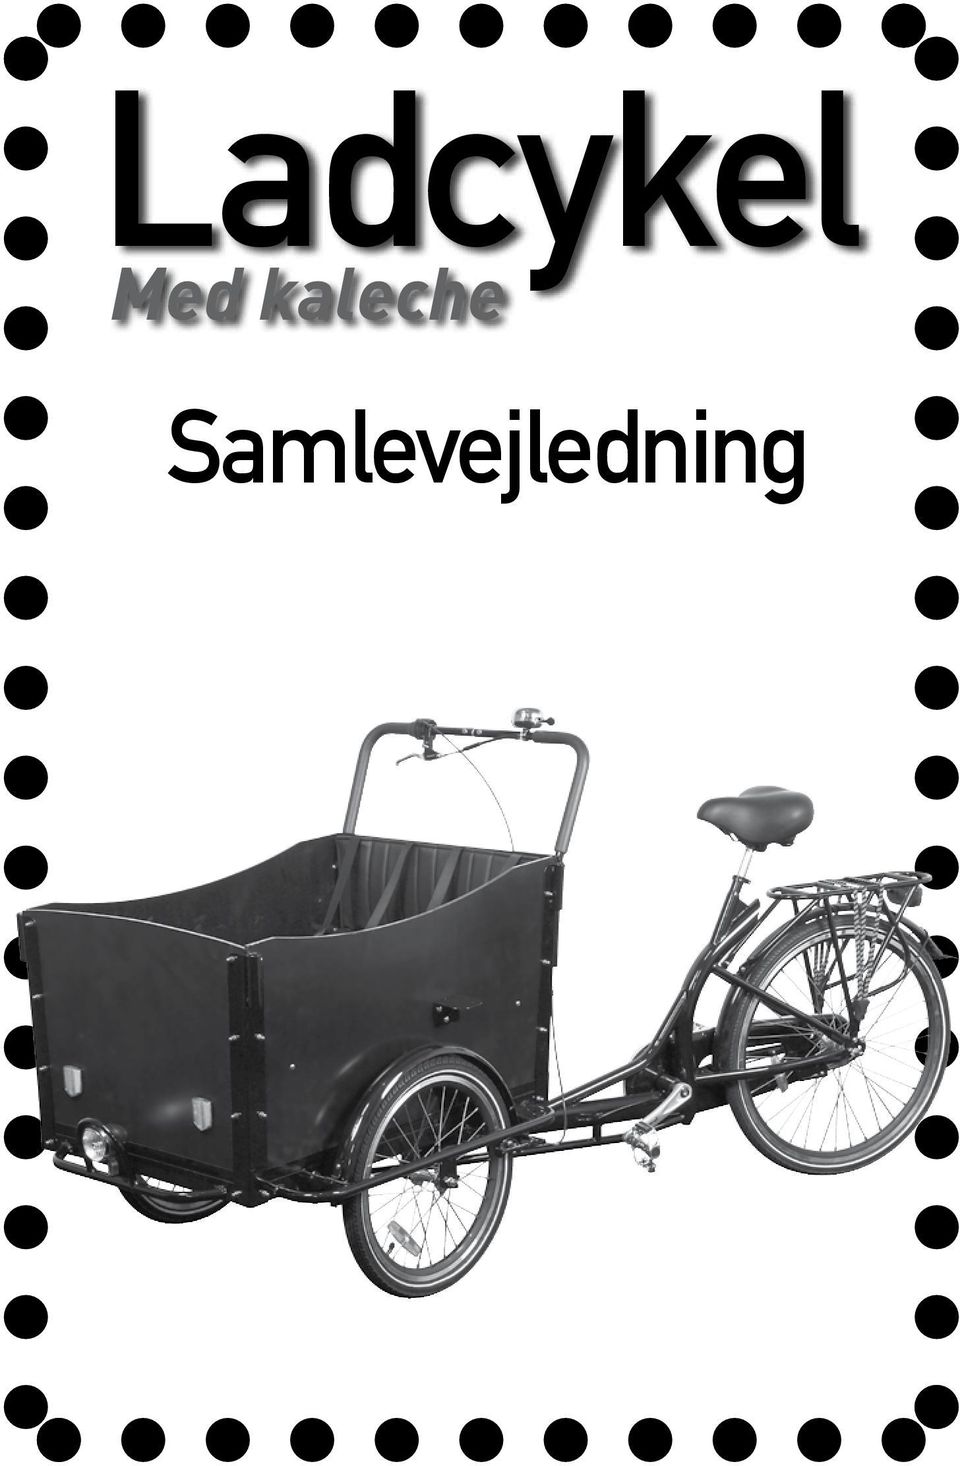 Ladcykel. Med kaleche. Samlevejledning - PDF Gratis download